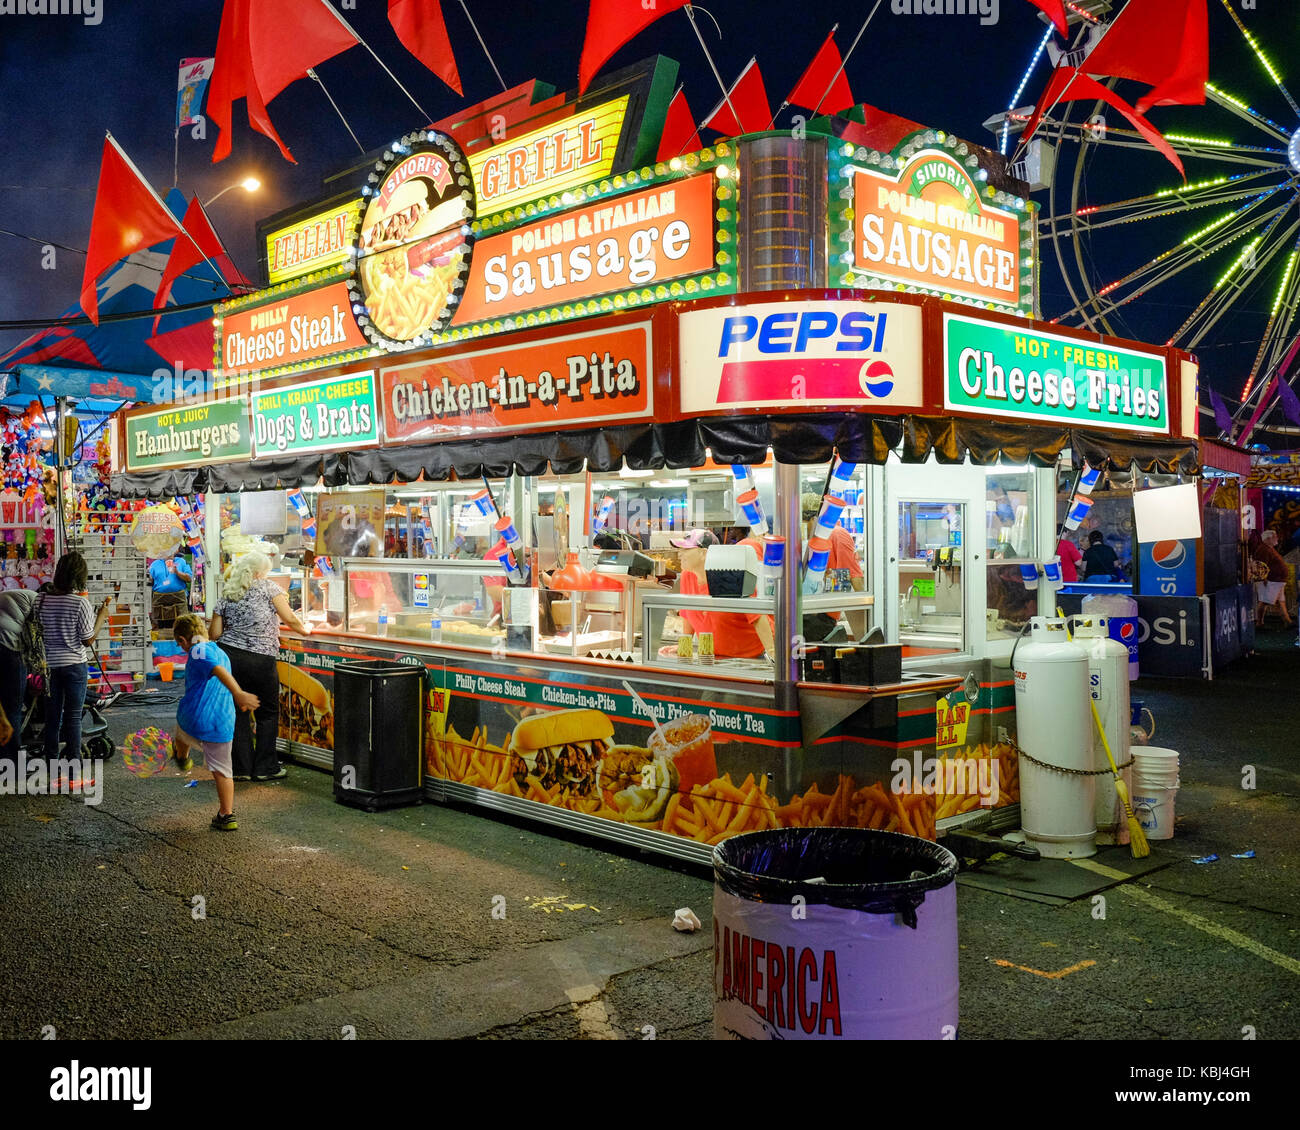 Karneval essen Anbieter stand auf der Midway am Alabama nationale Messe, die zu einer angemessenen Zustand ähnlich ist, in Montgomery, Alabama, USA. Stockfoto